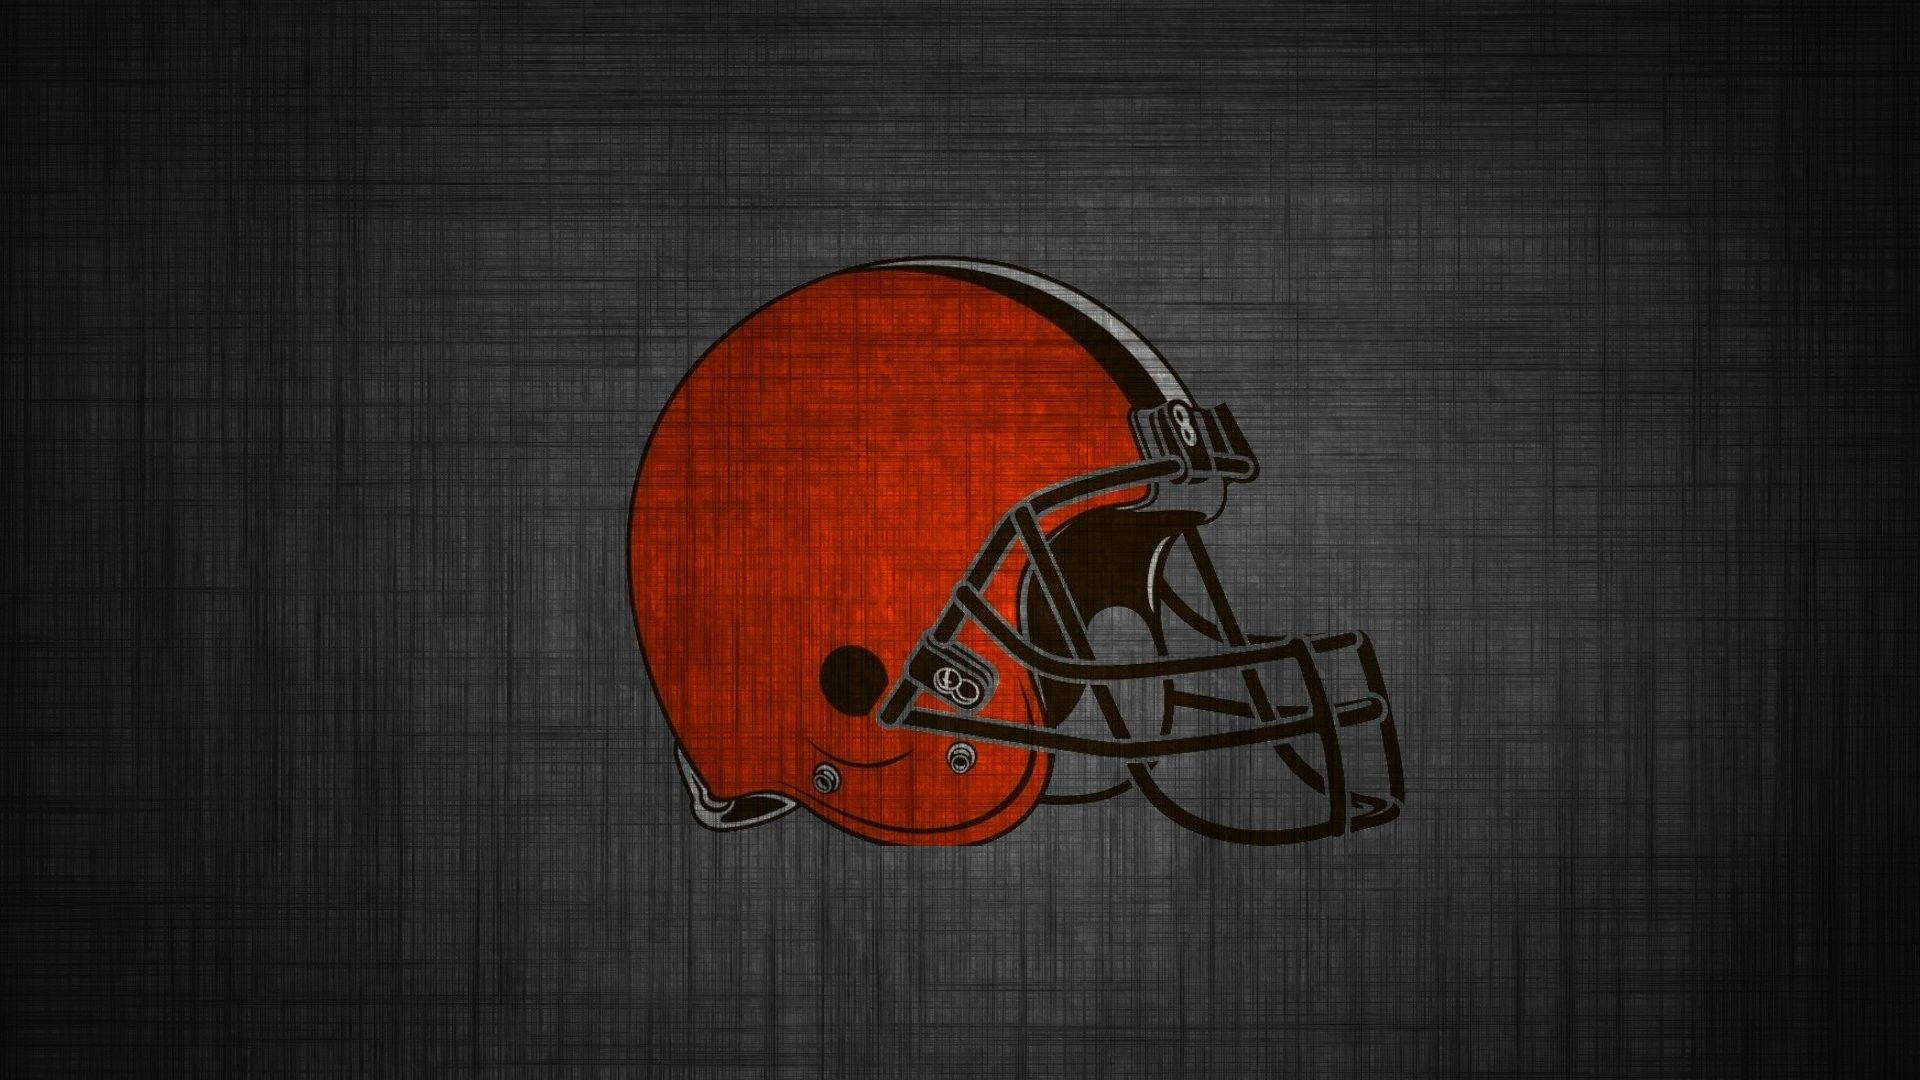 Sinister Cleveland Browns Logo Background